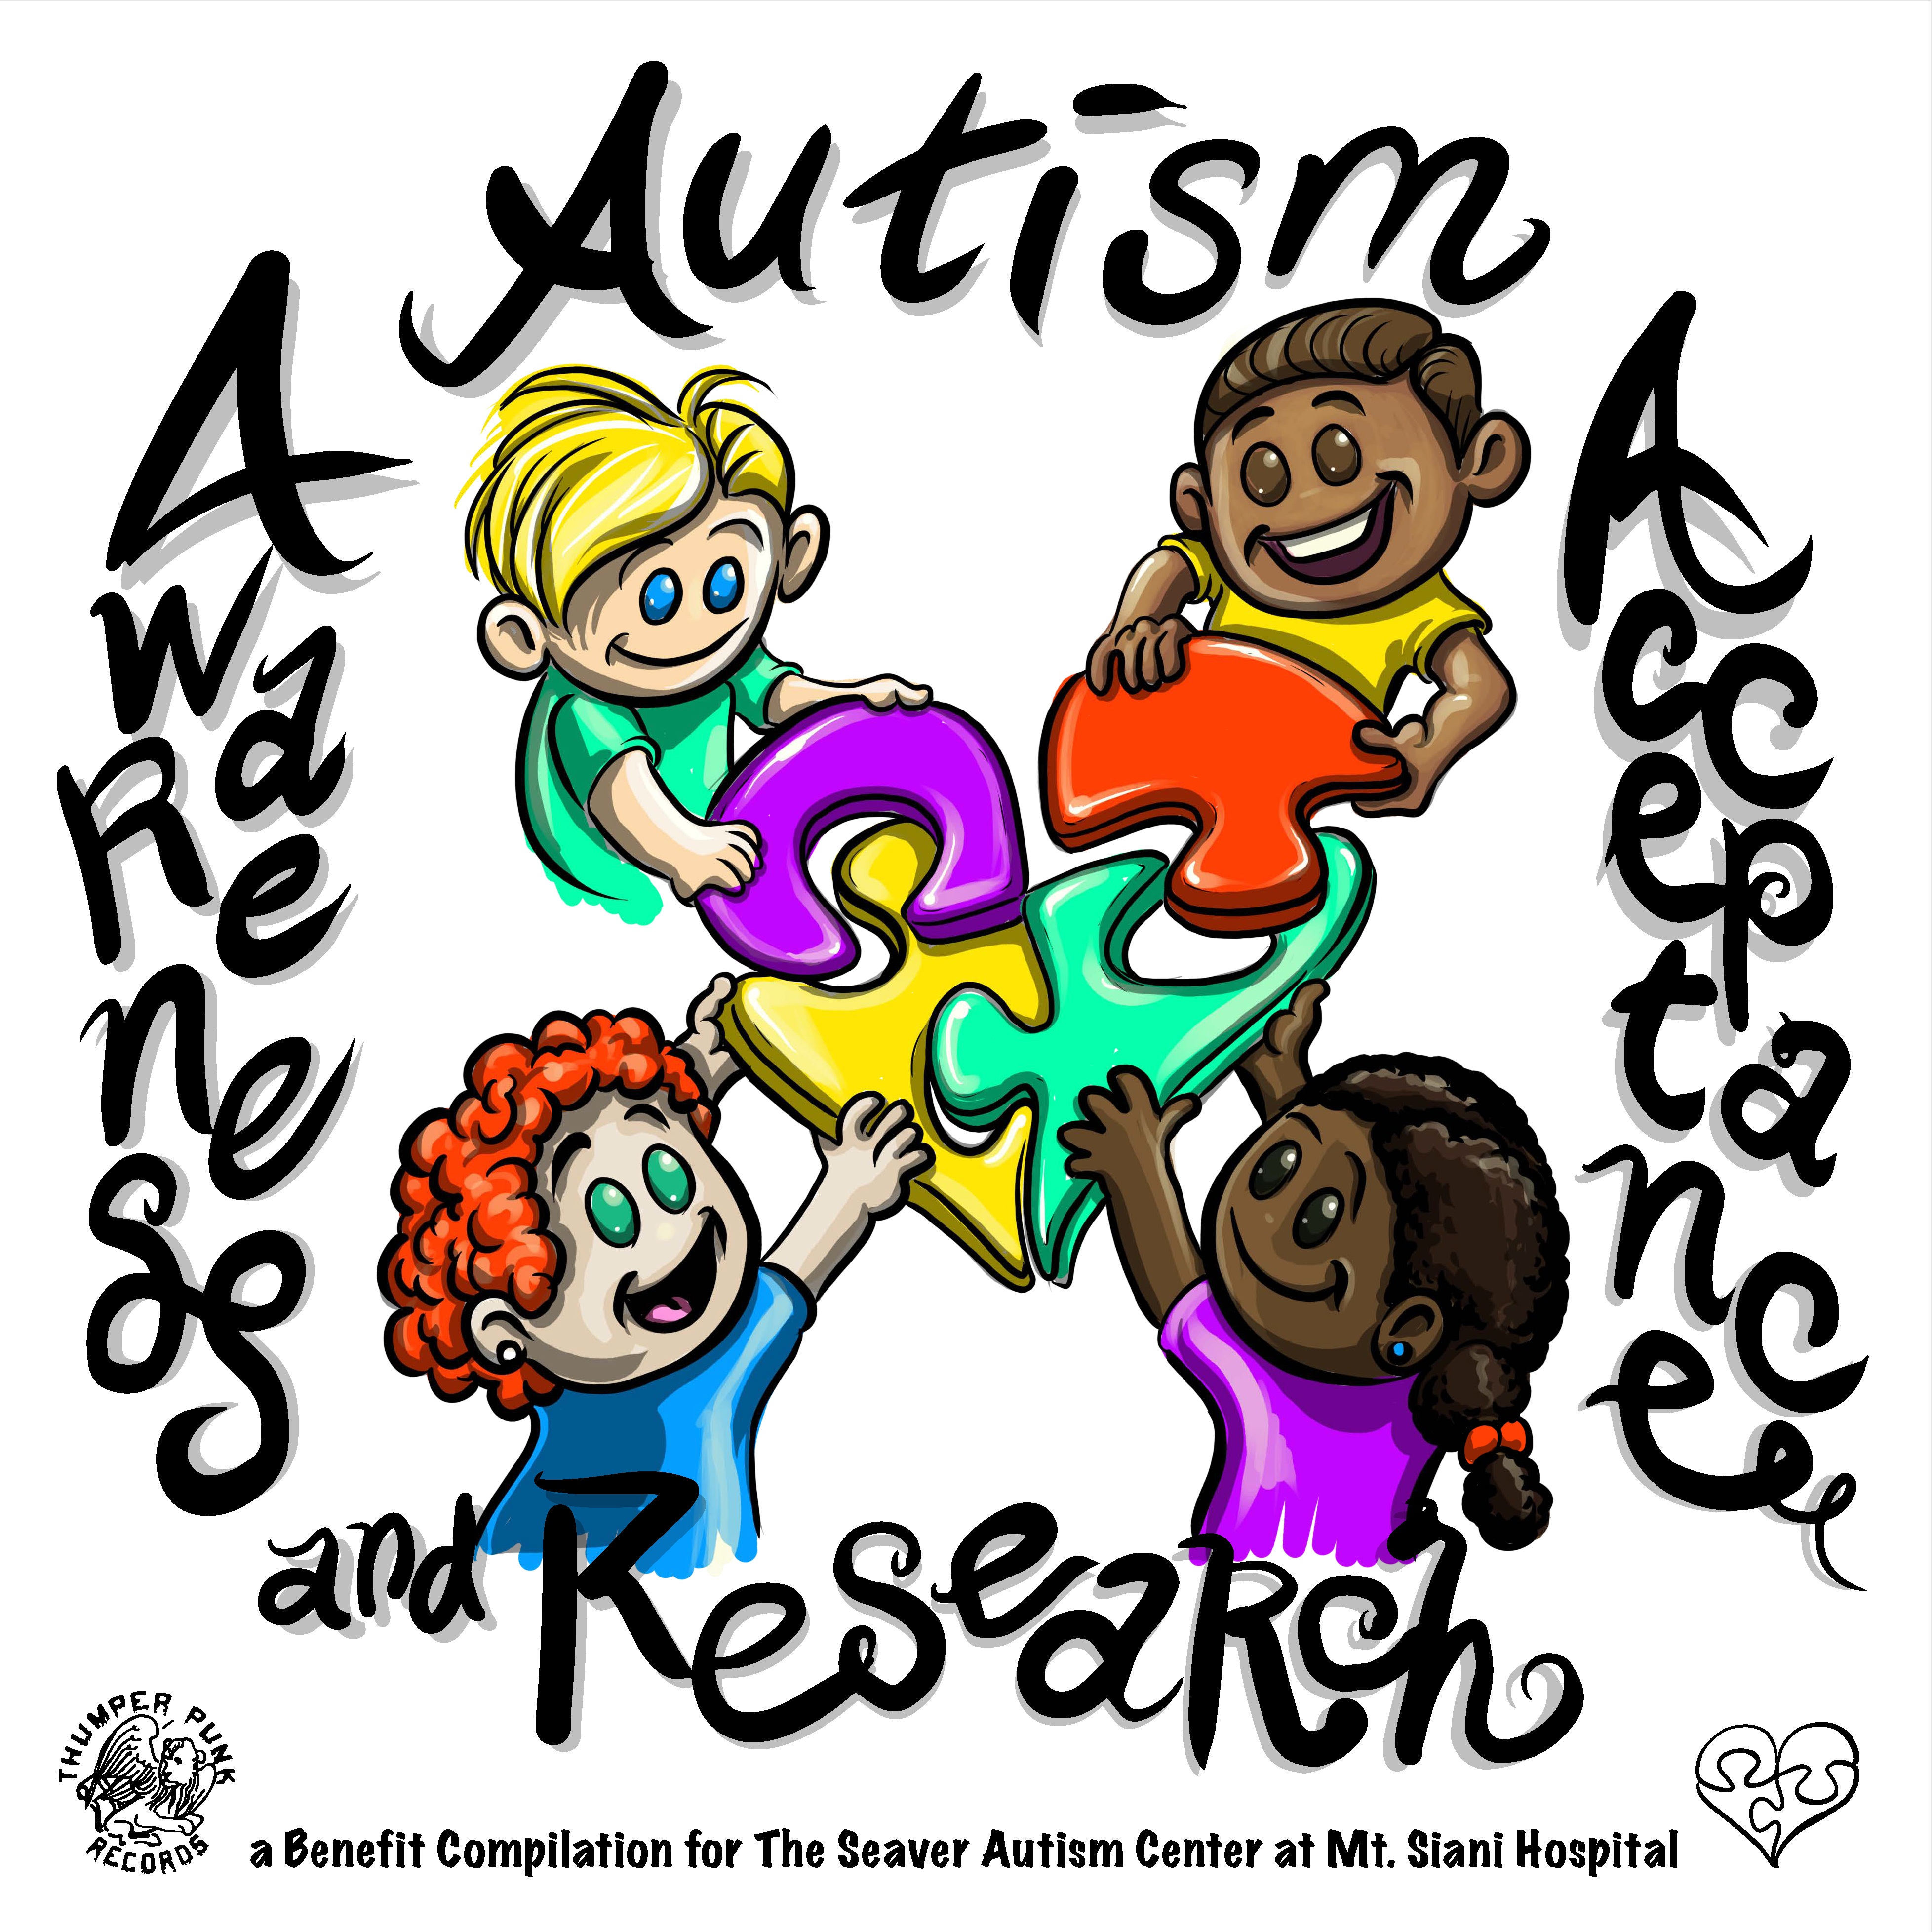 autism clipart acceptance